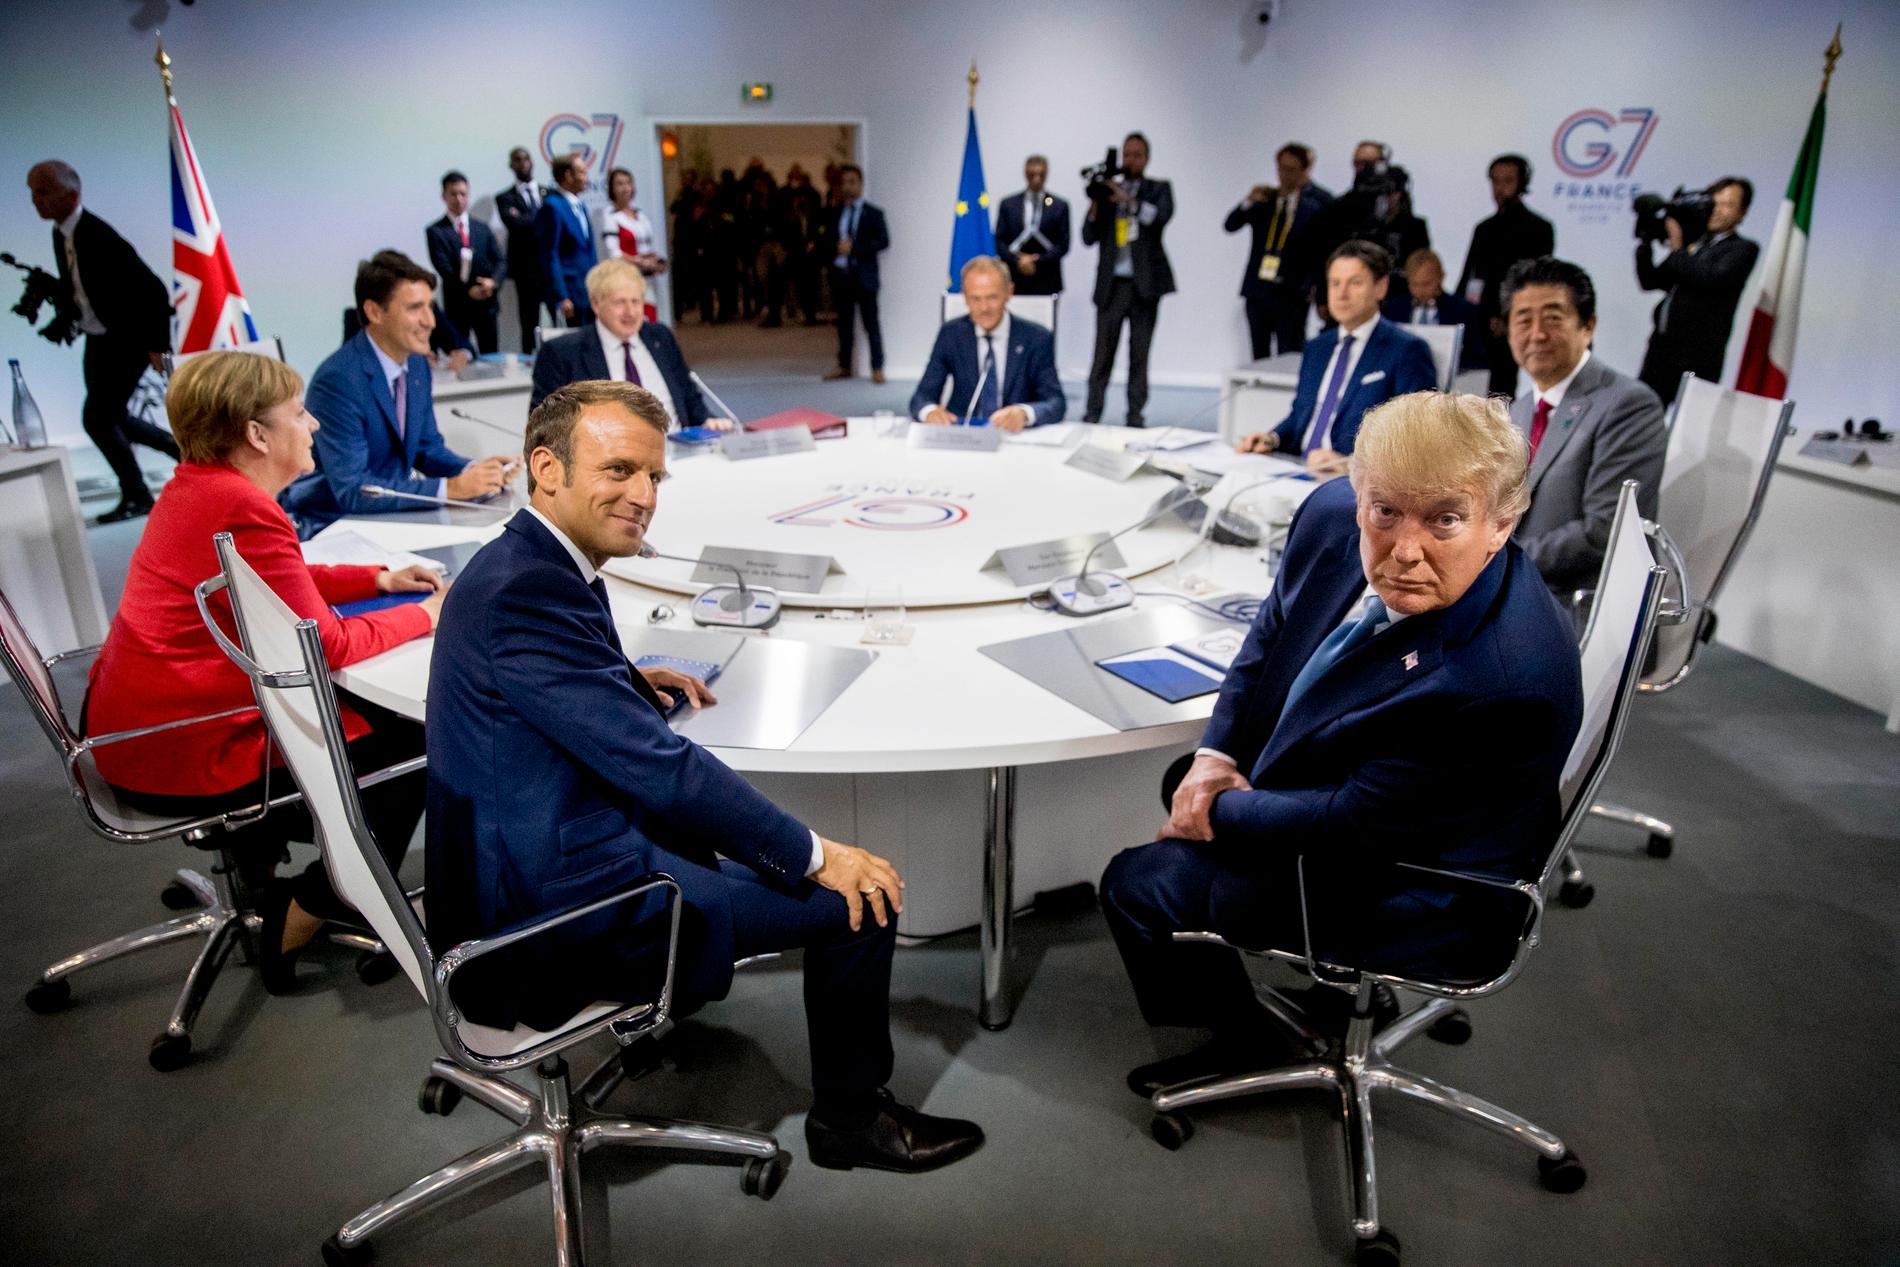 Den franske presidenten Emmanuel Macron (till vänster) och den amerikanske presidenten Donald Trump (till höger) är två av de ledare som deltar vid G7-mötet i franska Biarritz.